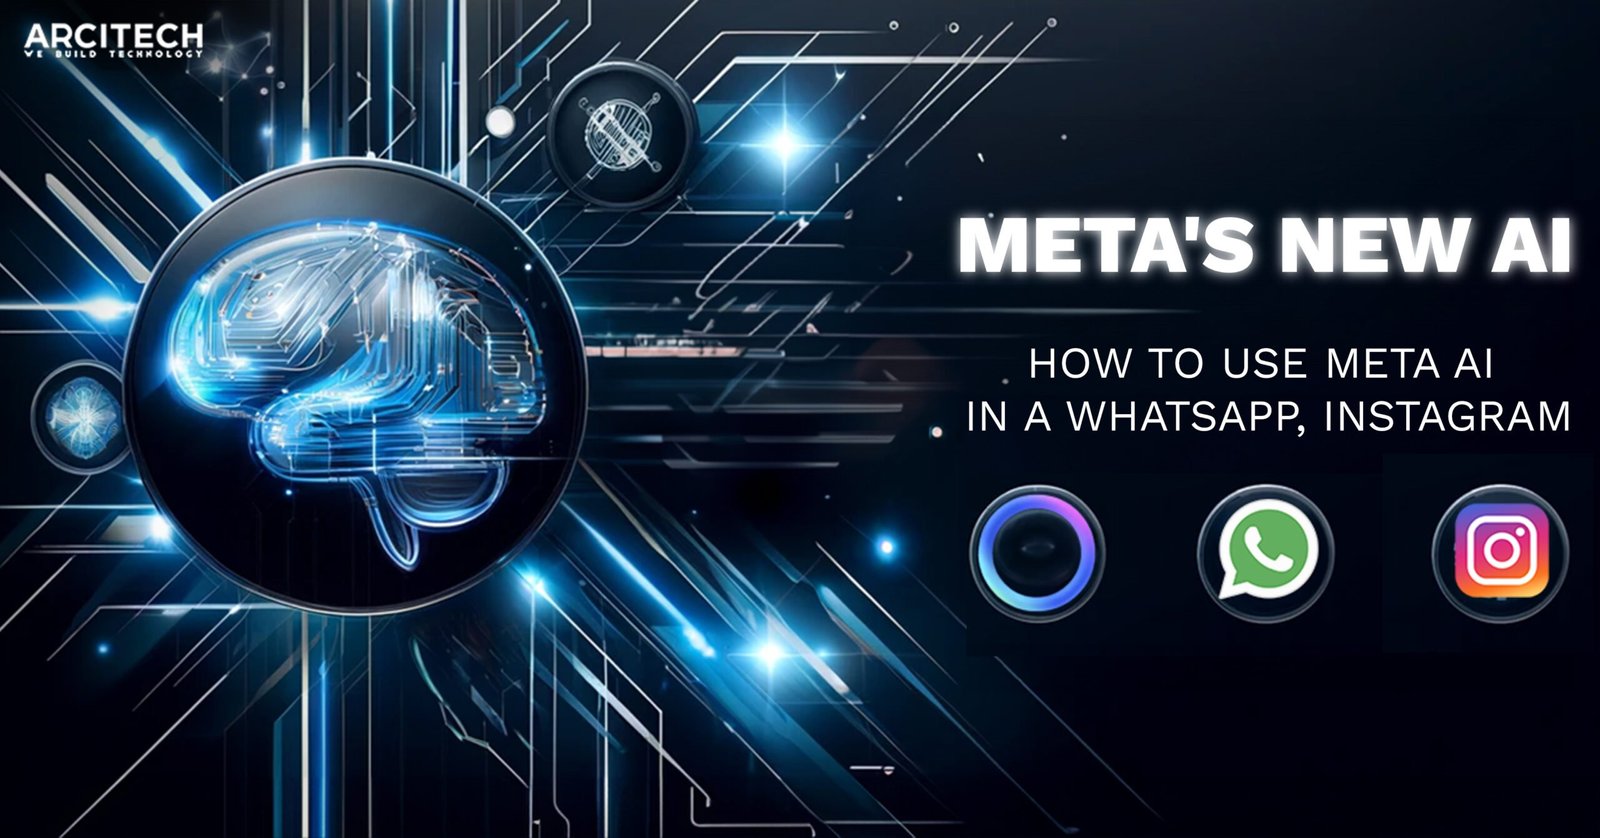 Meta's new AI How to use Meta AI in A WhatsApp, Instagram